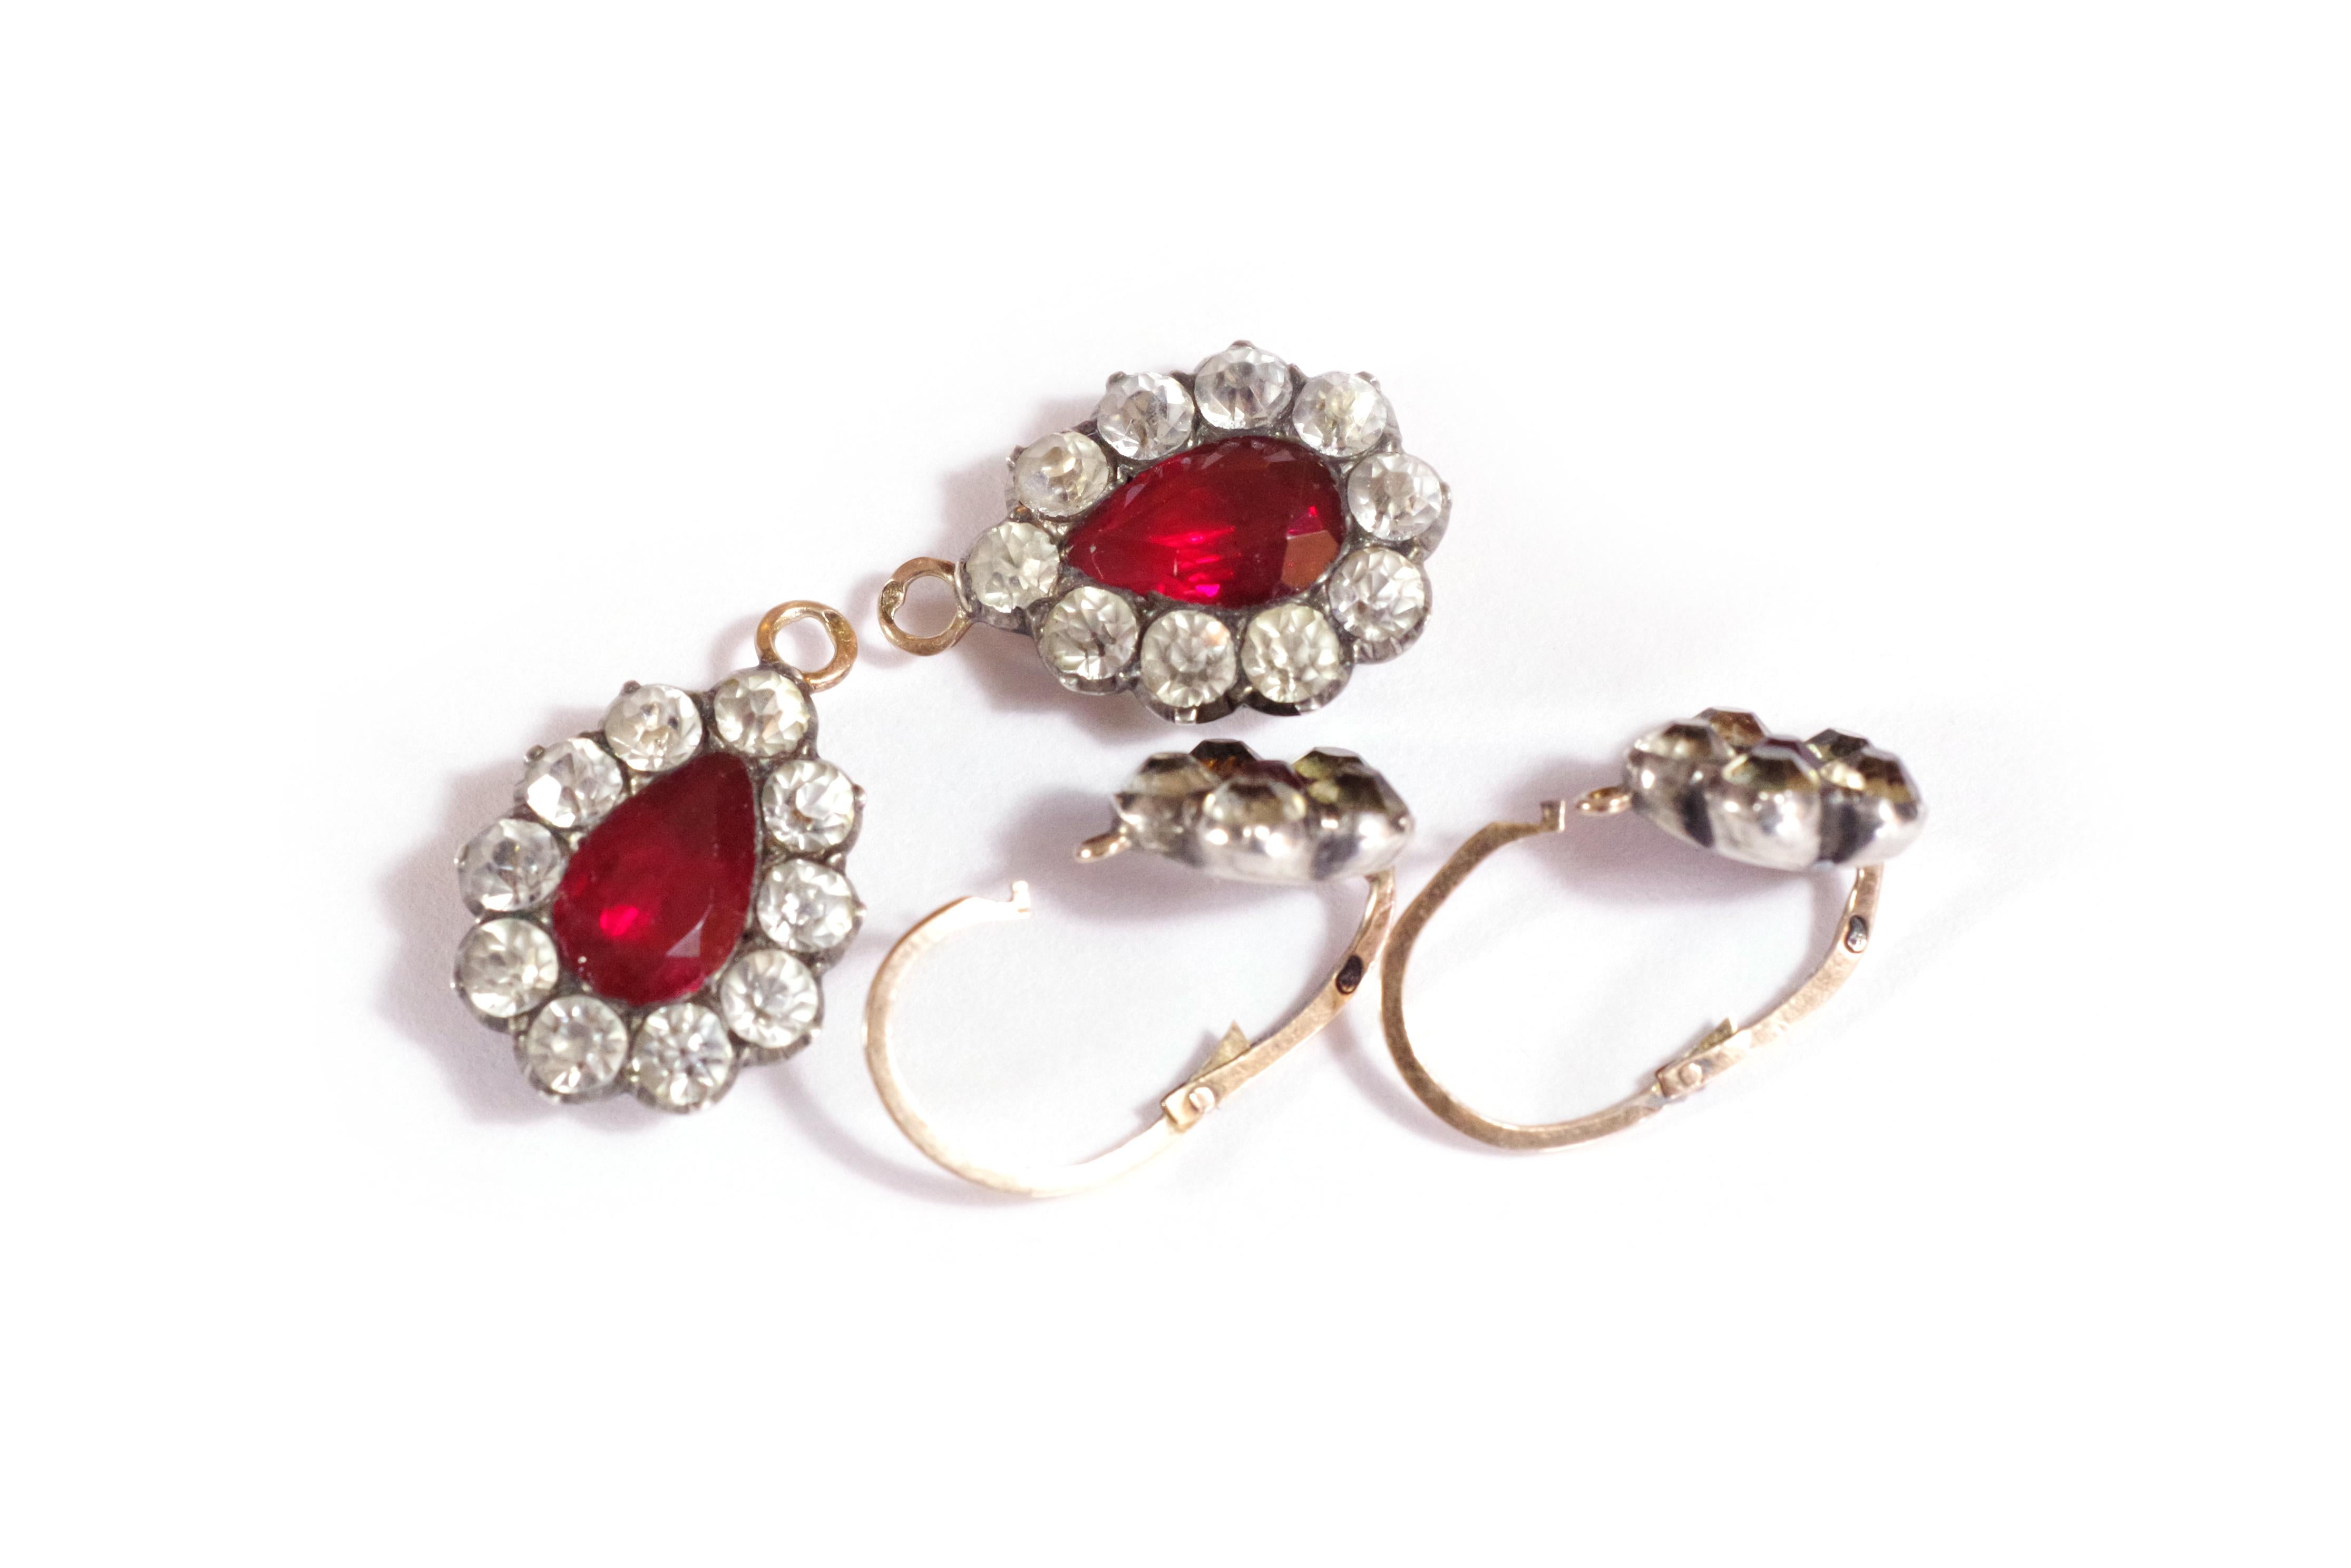 Women's or Men's Georgian Paste Earrings in Gold and Silver, Antique Flower Paste Earrings